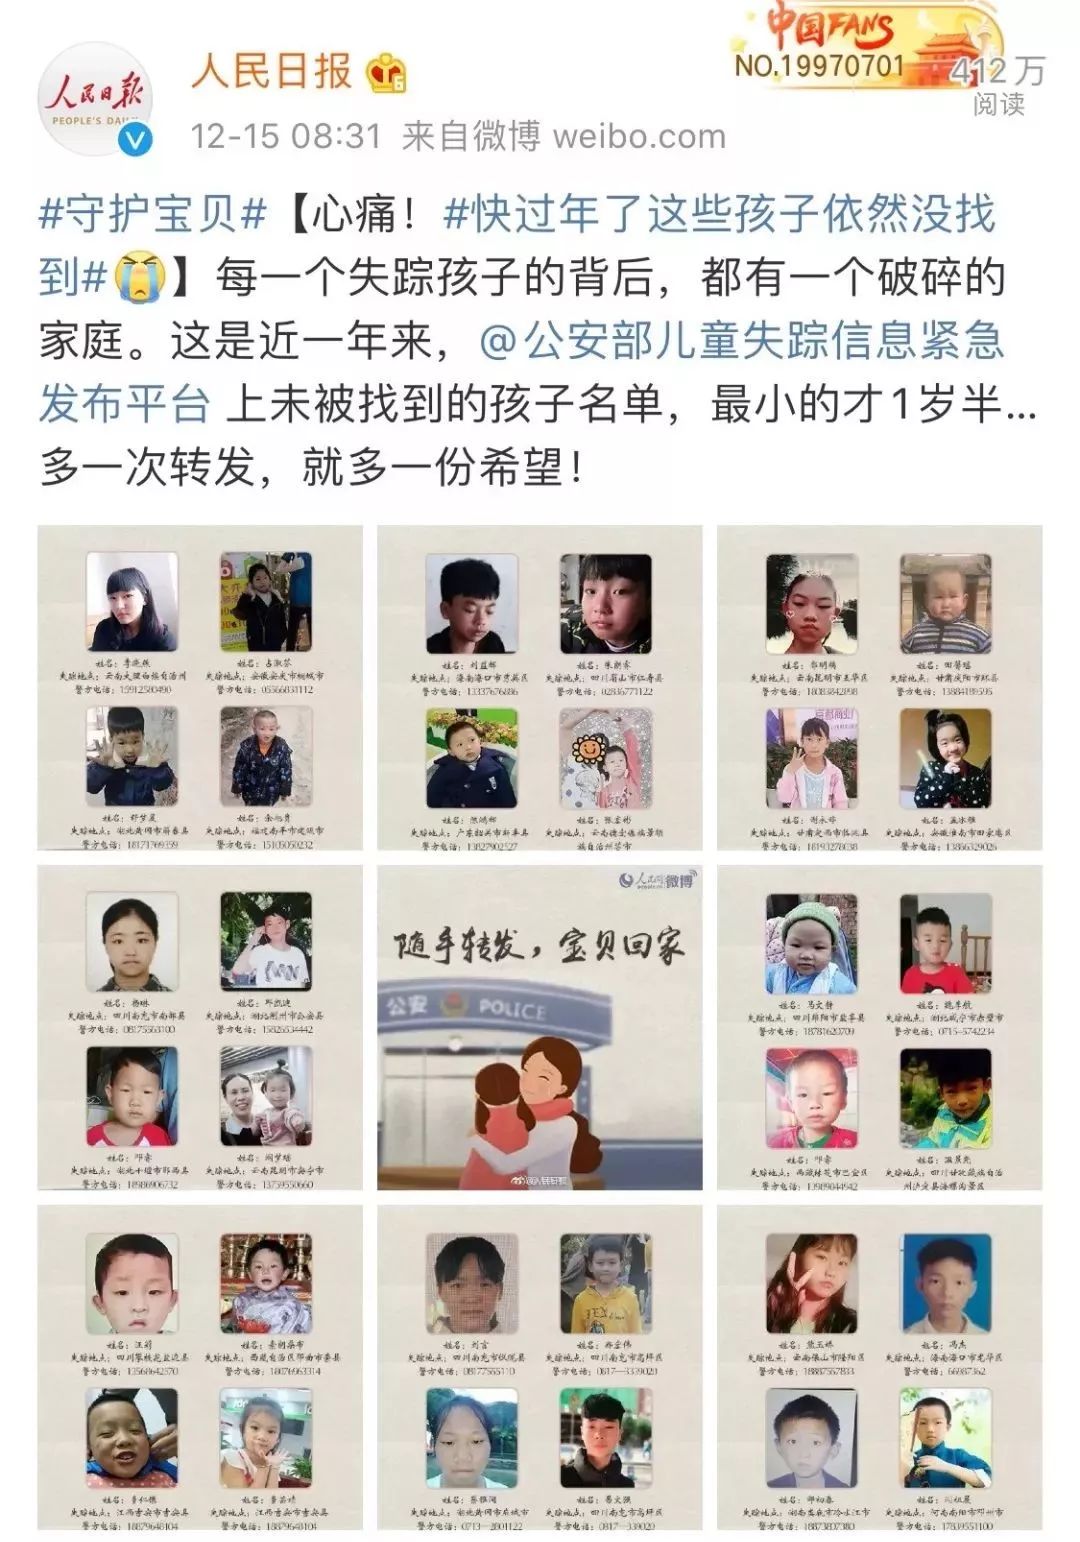 两儿童失踪一天后双双溺亡 失踪前曾被人带着赶集-搜狐大视野-搜狐新闻